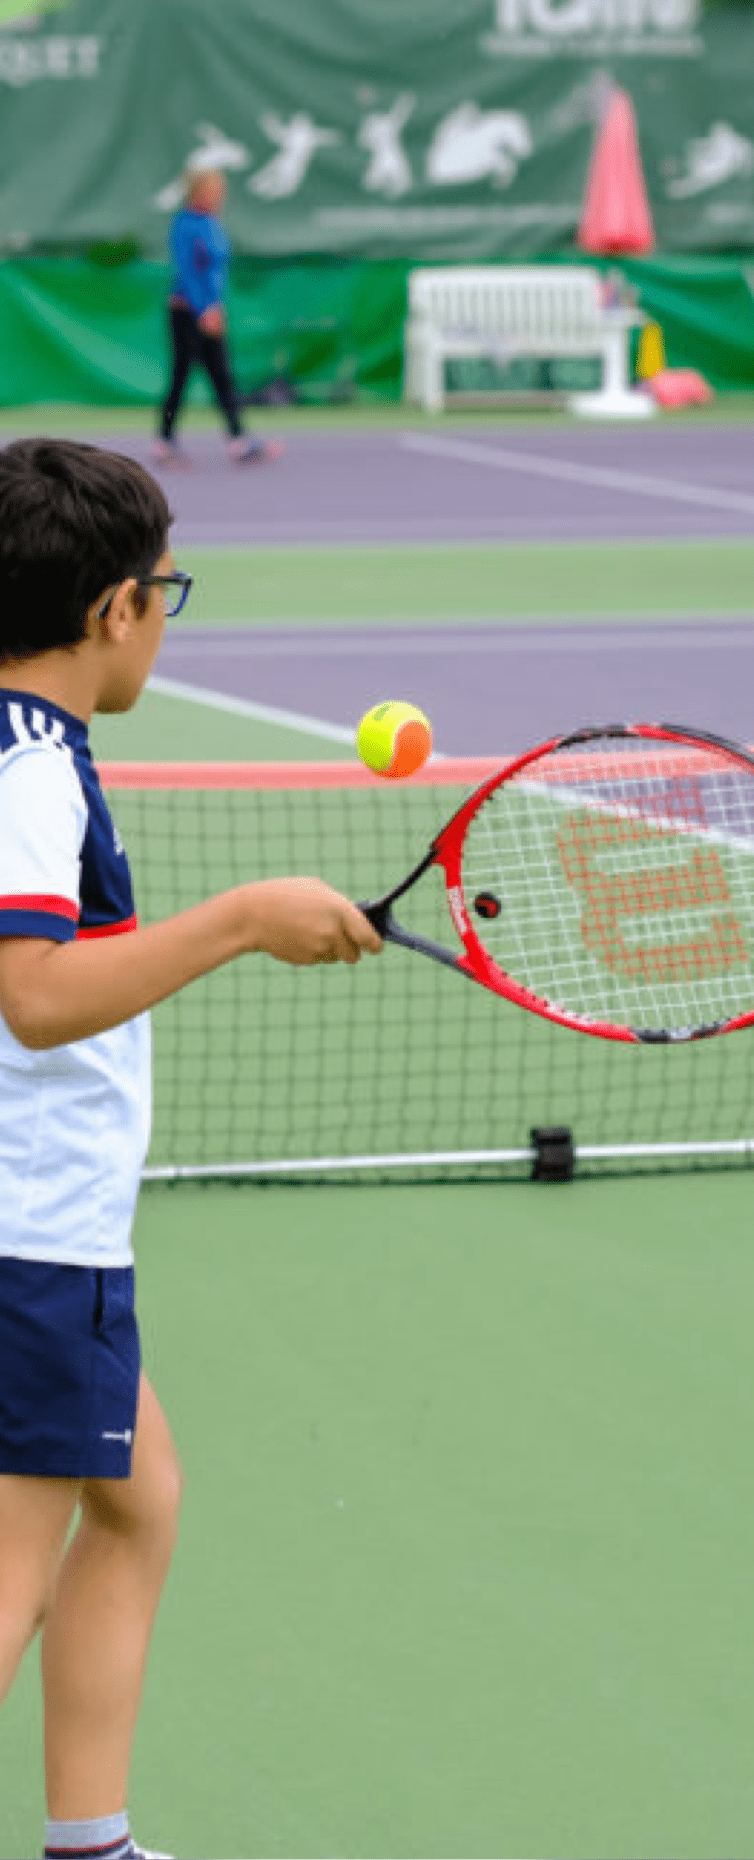 Cours de tennis pour les enfants